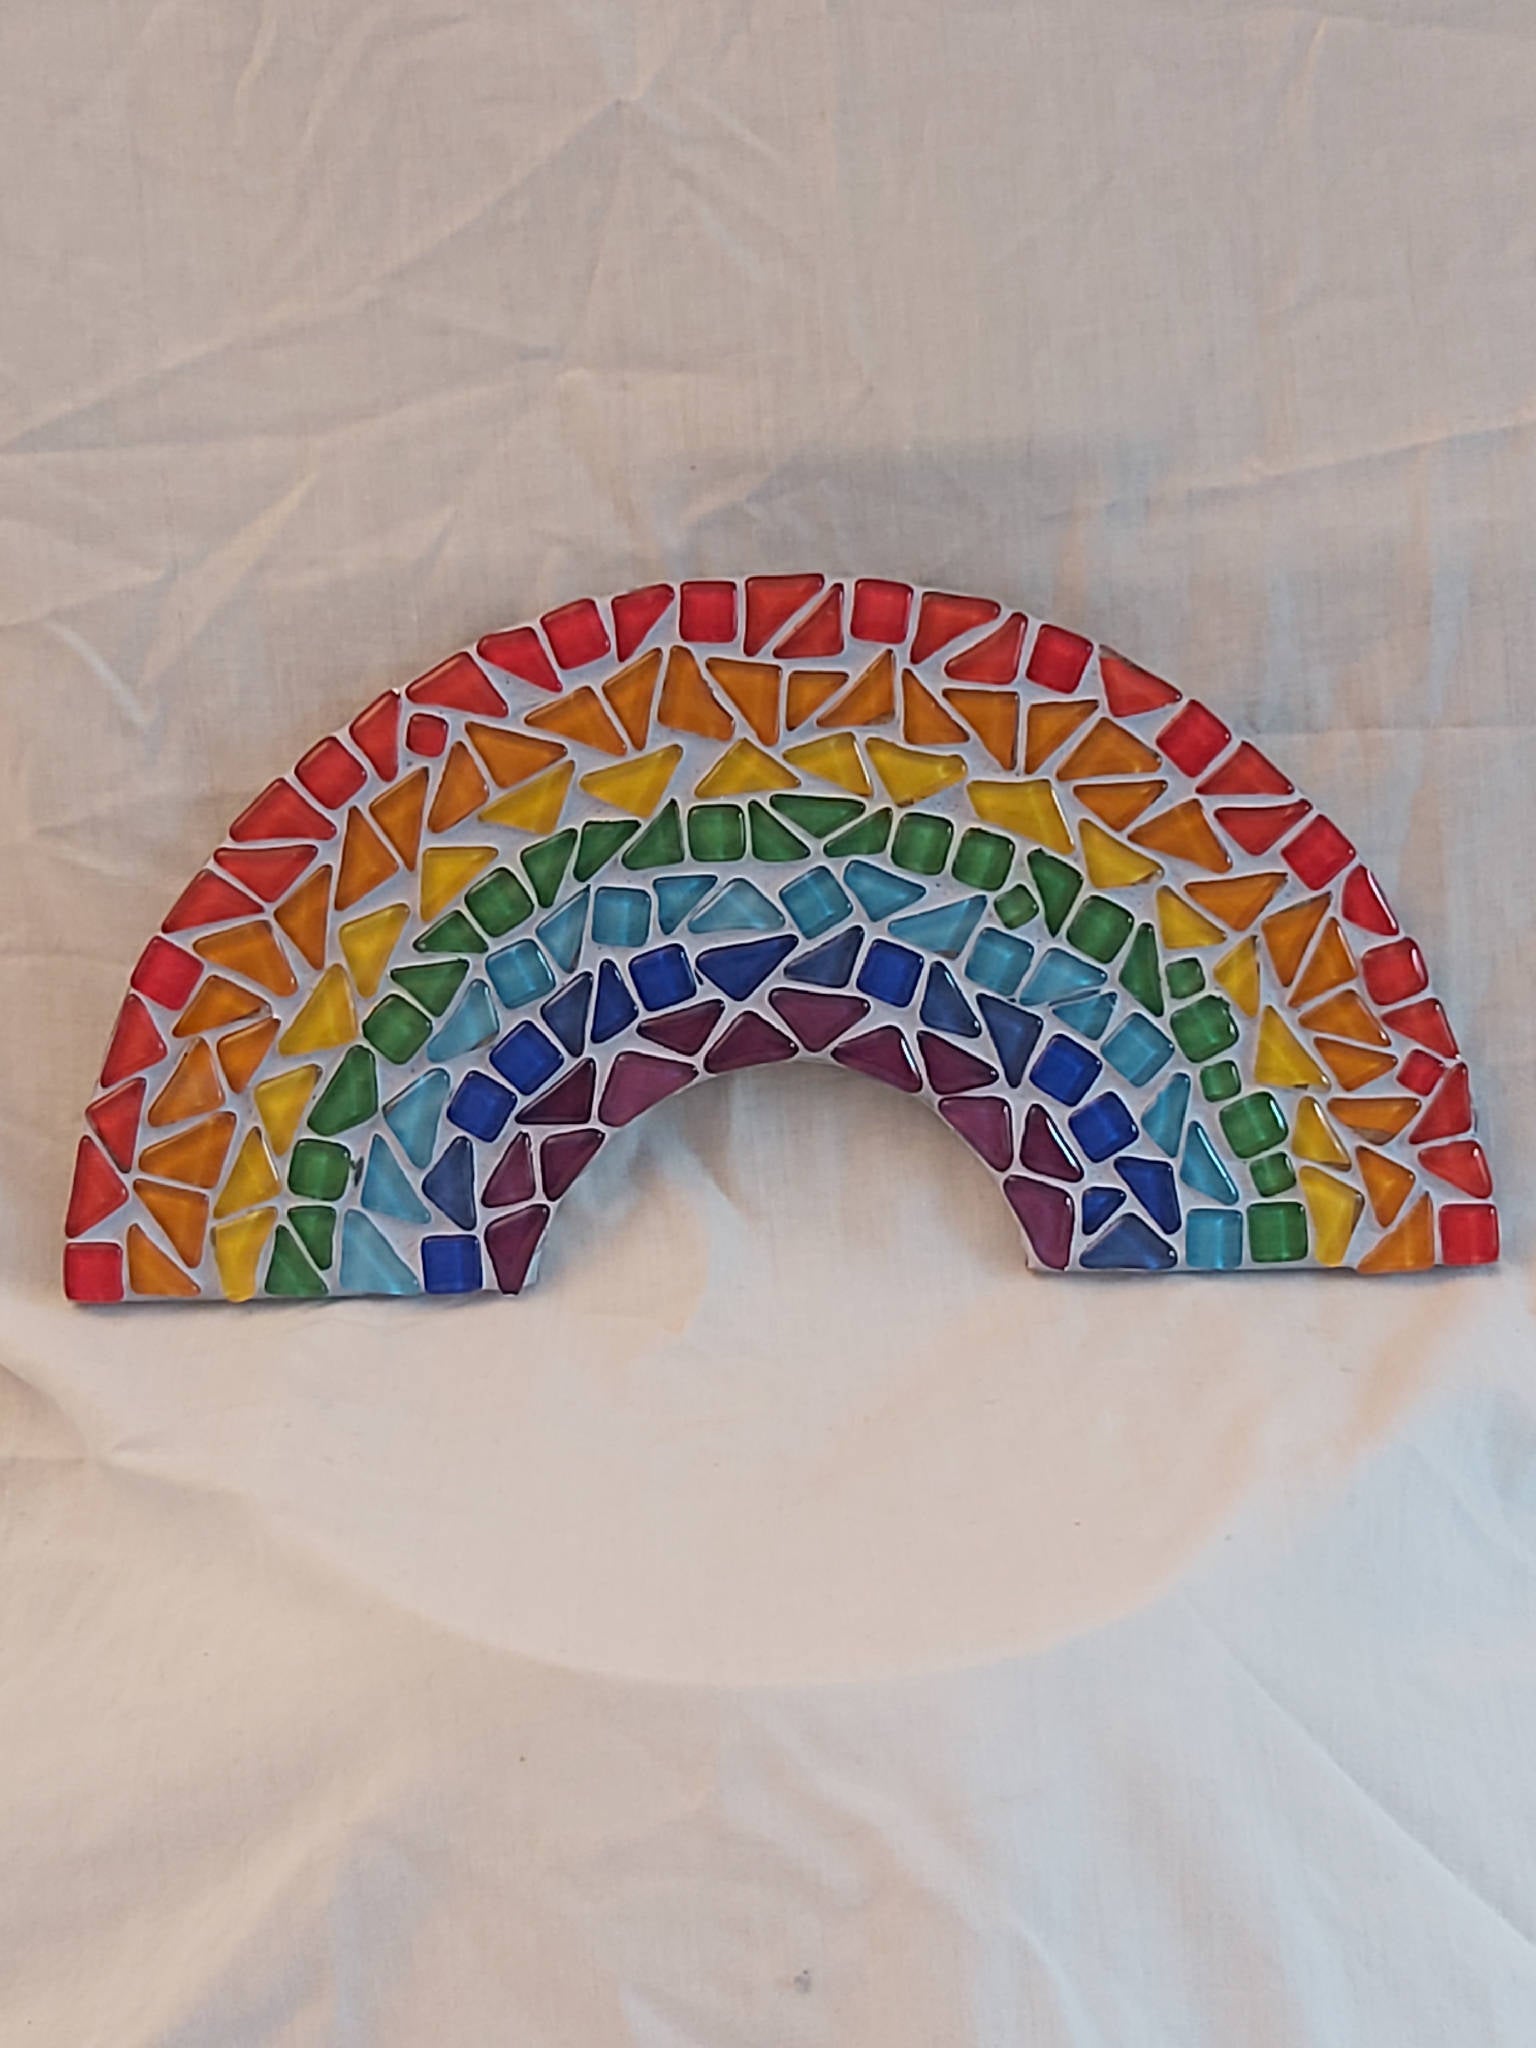 Mosaic tiled rainbow colour glass